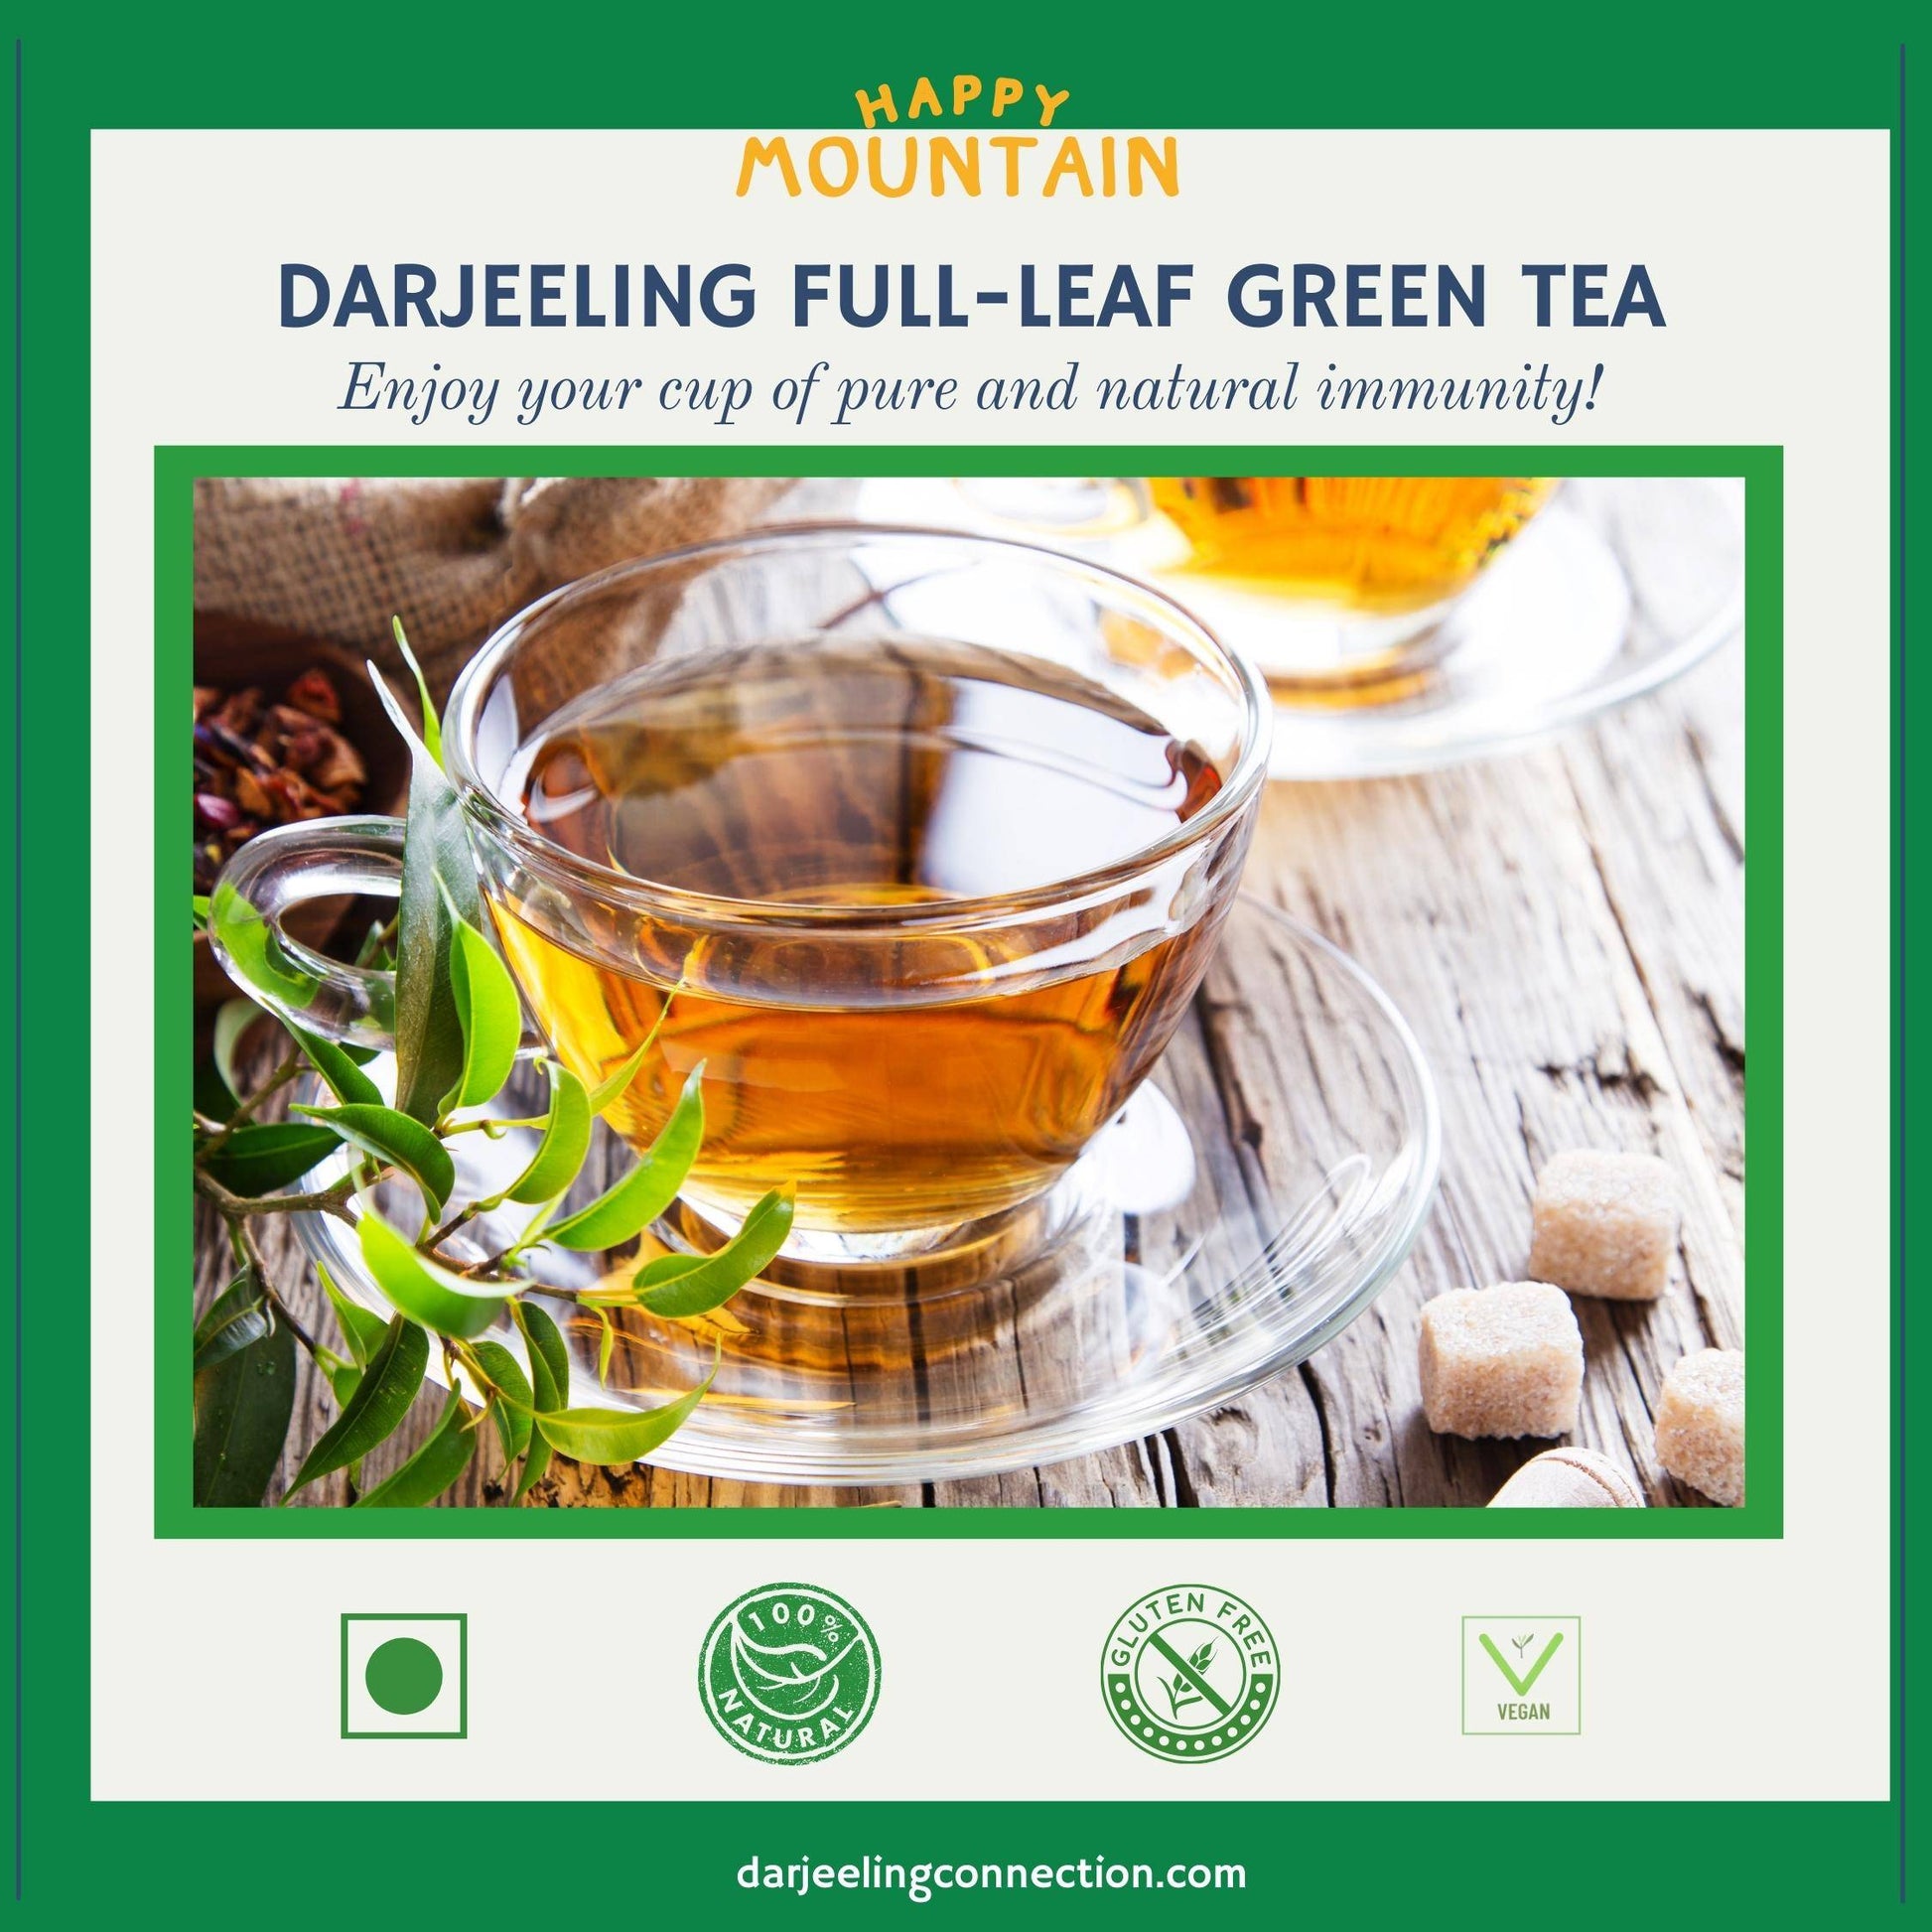 Darjeeling Full-Leaf Green Tea - Happy Mountain